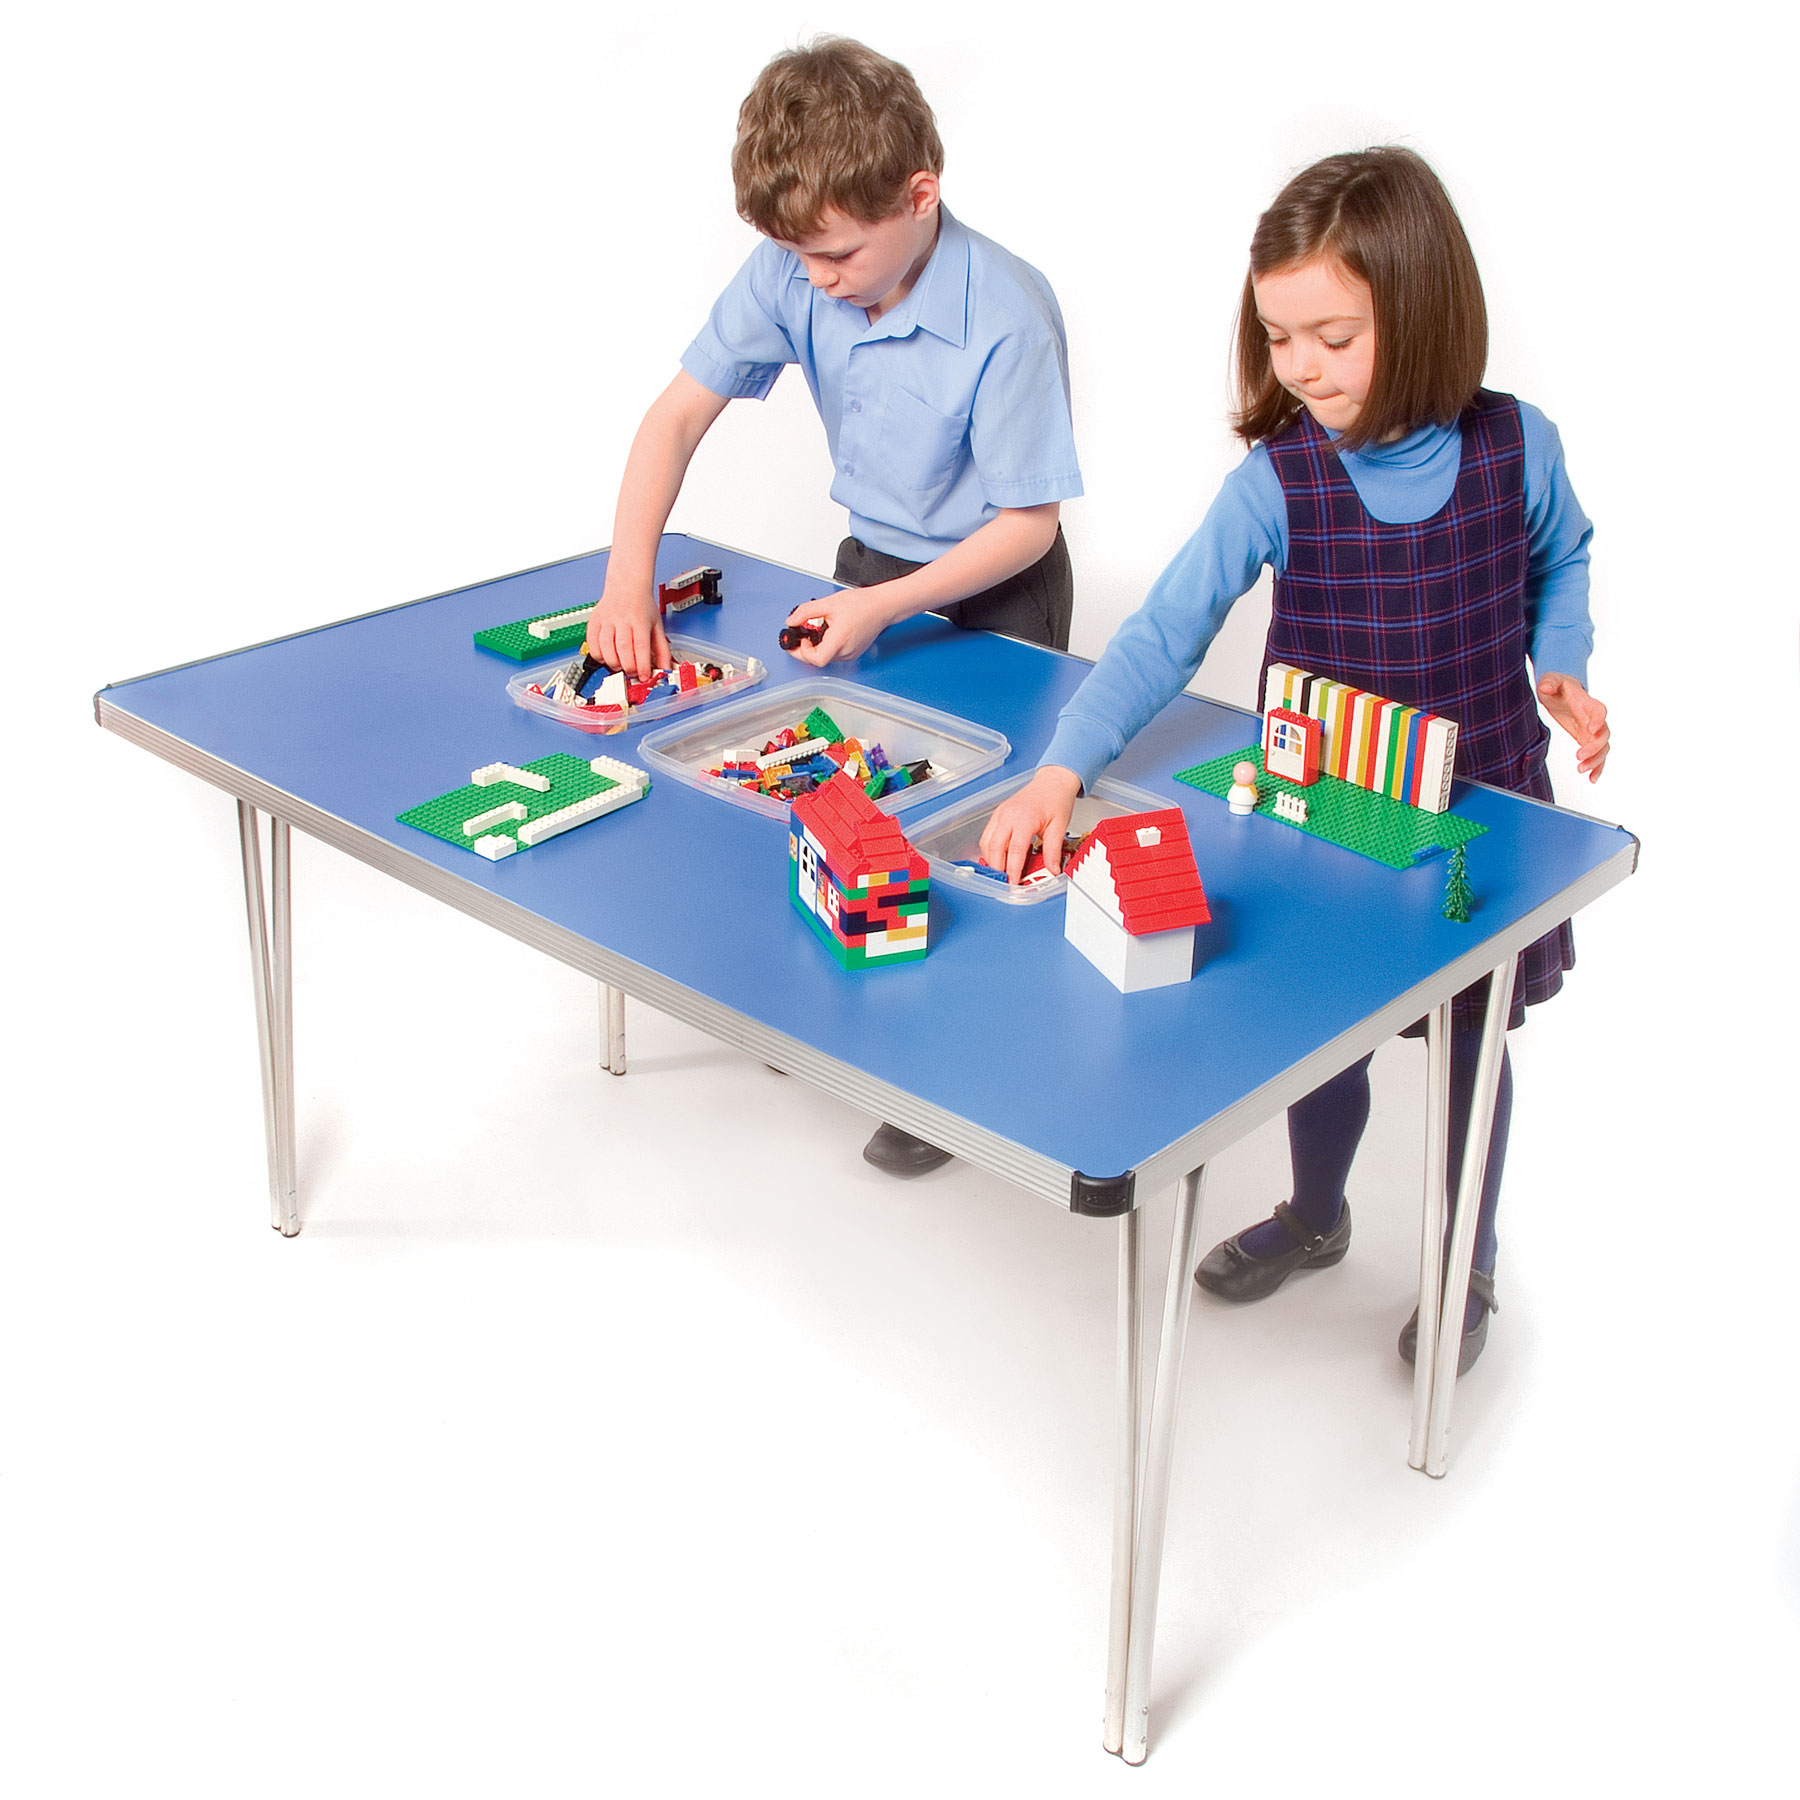 Children's Folding Tables